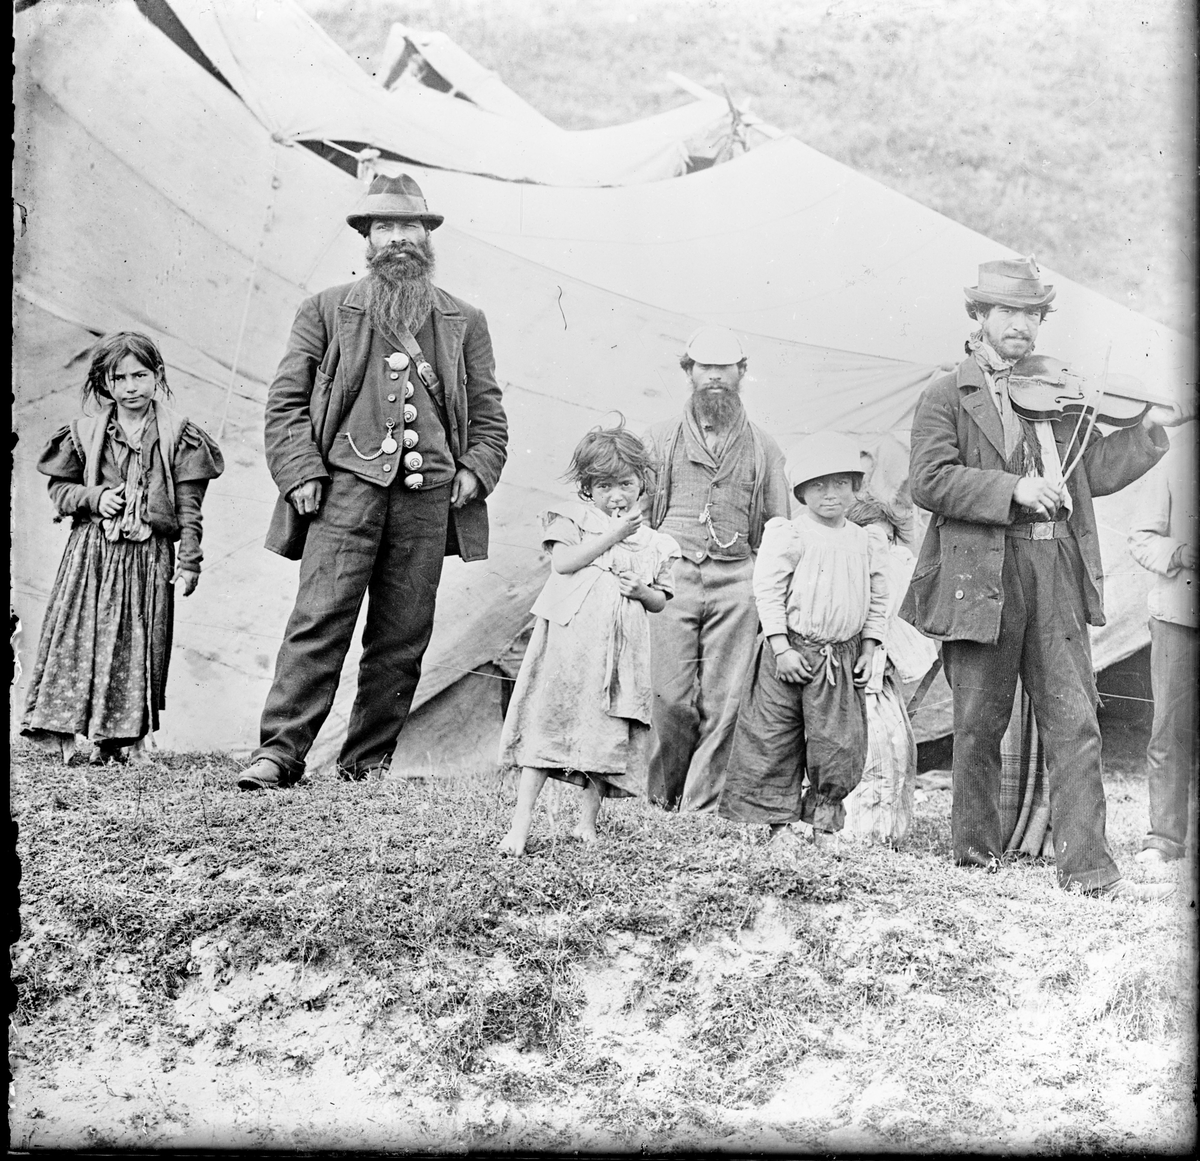 I en backe har ett romskt sällskap slagit läger. Framför ett tält står några barn och vuxna. En man spelar fiol och en annan man är klädd i en kavaj smyckad med stora knappar, troligen av någon ädelmetall.